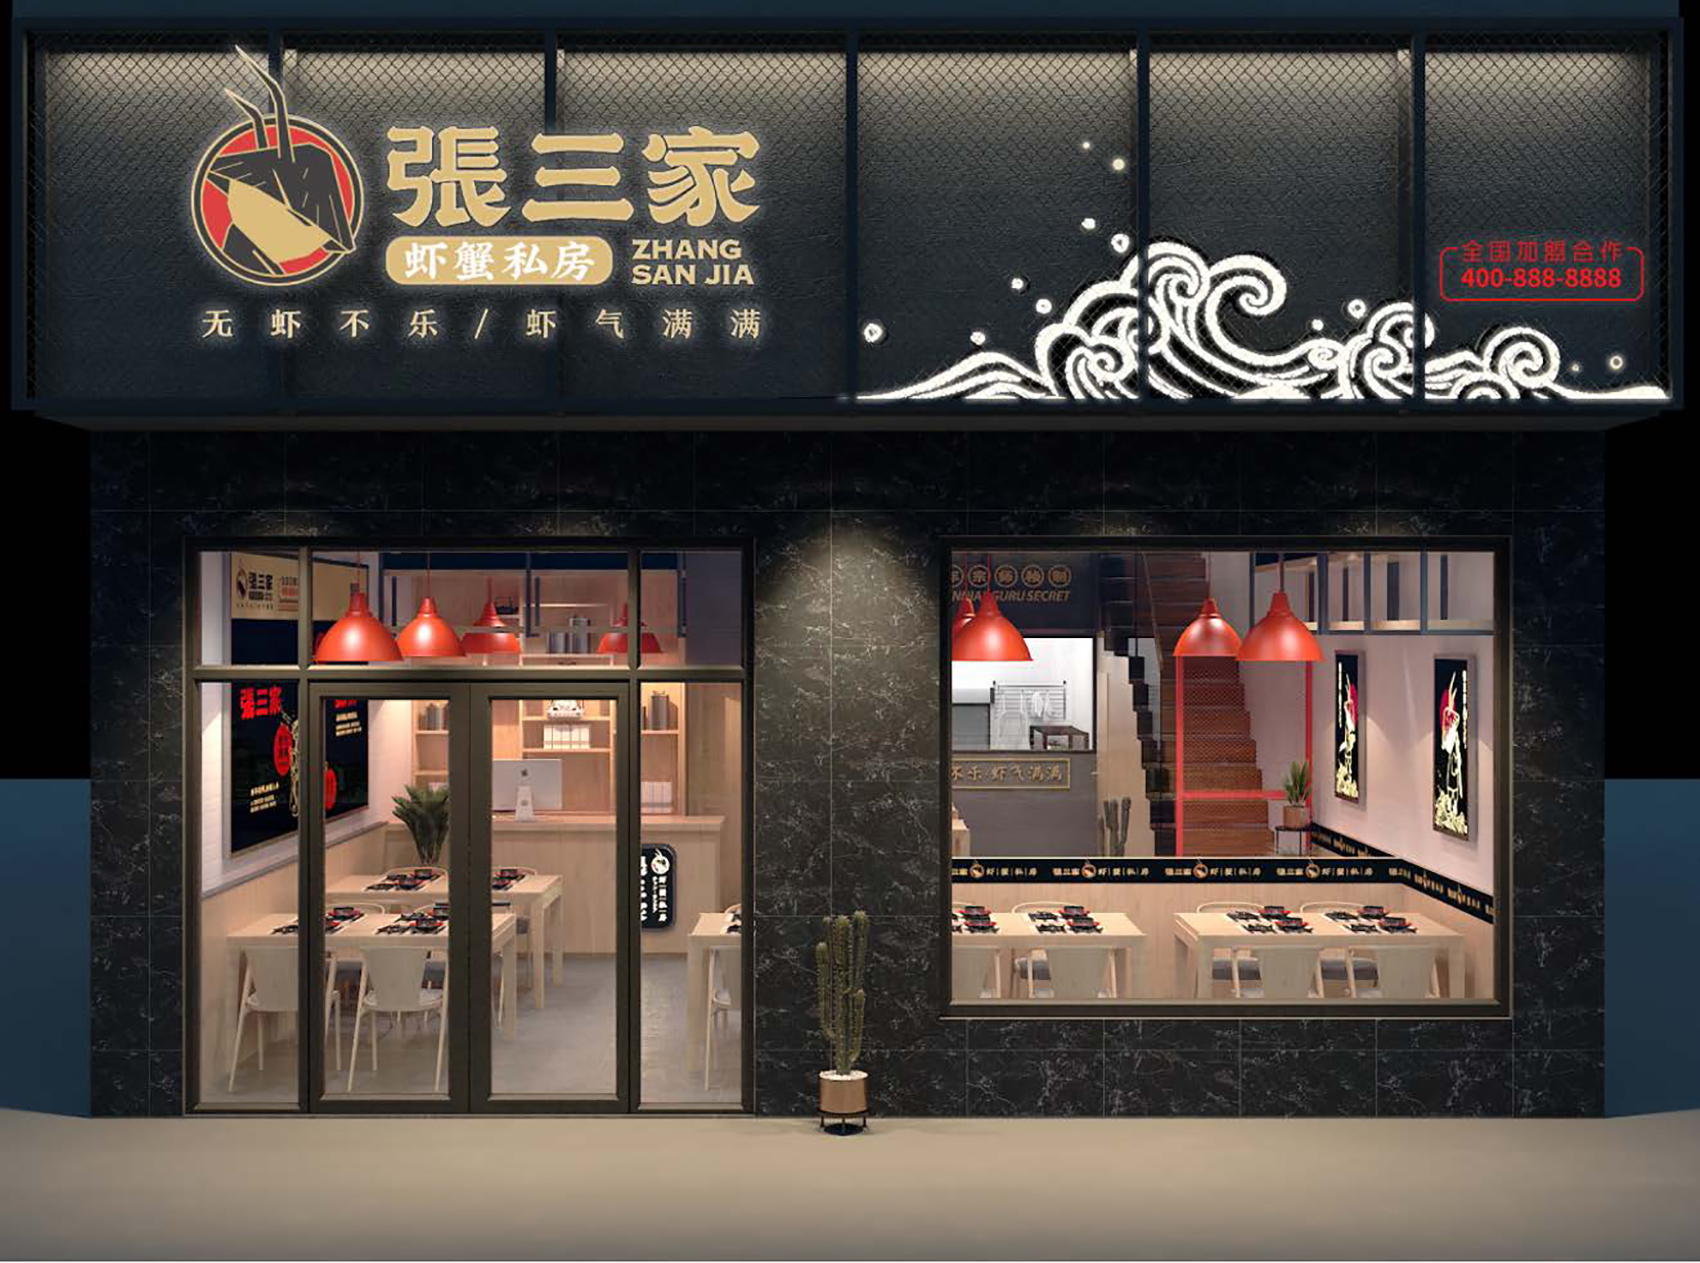 南京餐饮品牌vi设计公司 餐饮品牌 南京vi设计公司 vi设计公司 vi设计